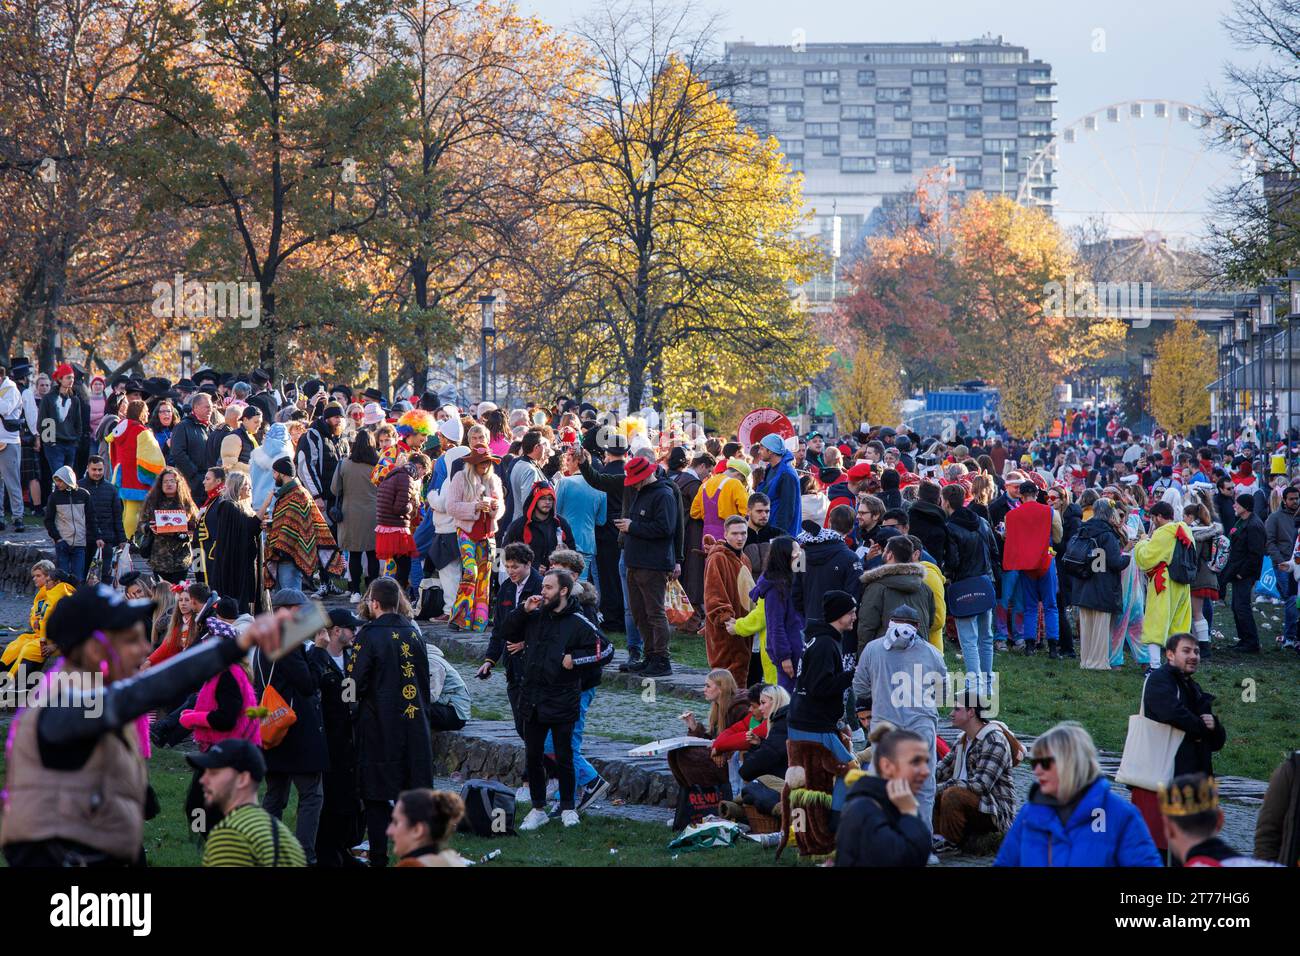 Am Tag der Eröffnung der Karnevalsveranstaltung am 11.11.23 feiern viele Menschen im Rheingarten in der Kölner Altstadt. Am-Tag der Stockfoto